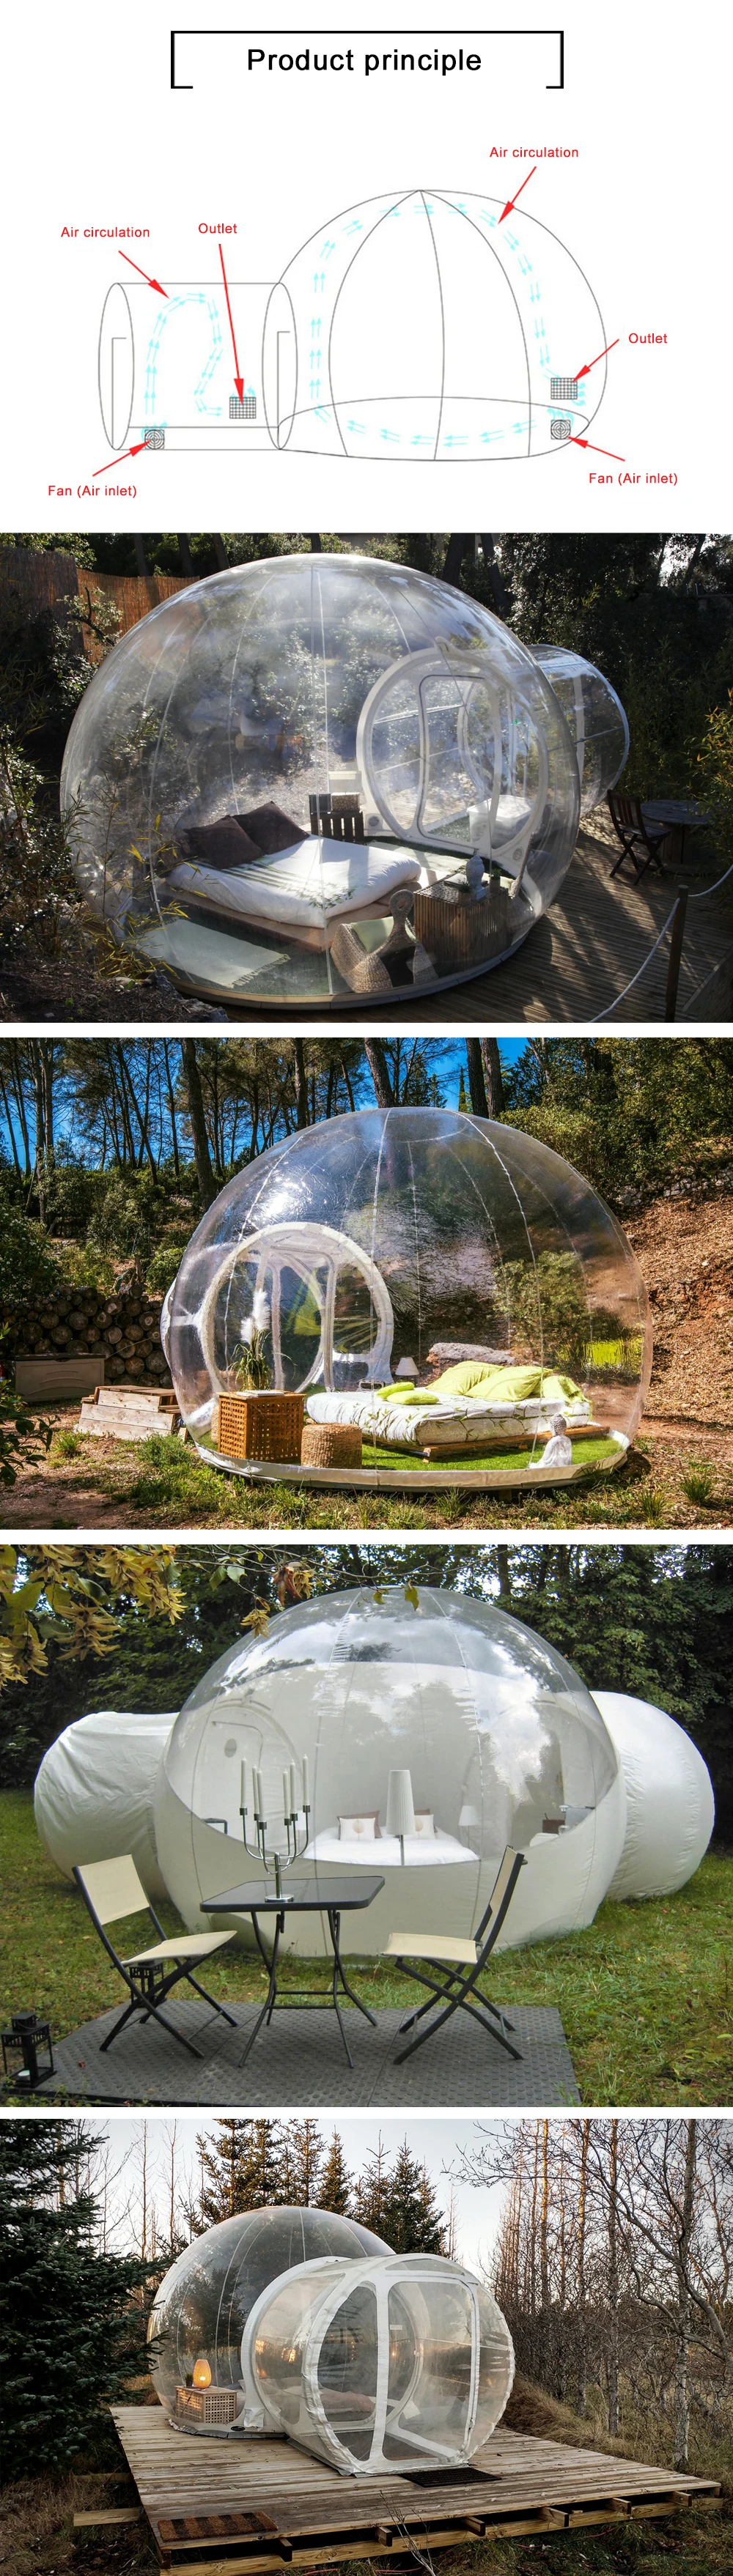 Вентилятор надувной пузырь дом 3 м/4 м/5 м диаметр открытый пузырь палатка для кемпинга ПВХ дерево Палатка/Igloo палатка Горячая